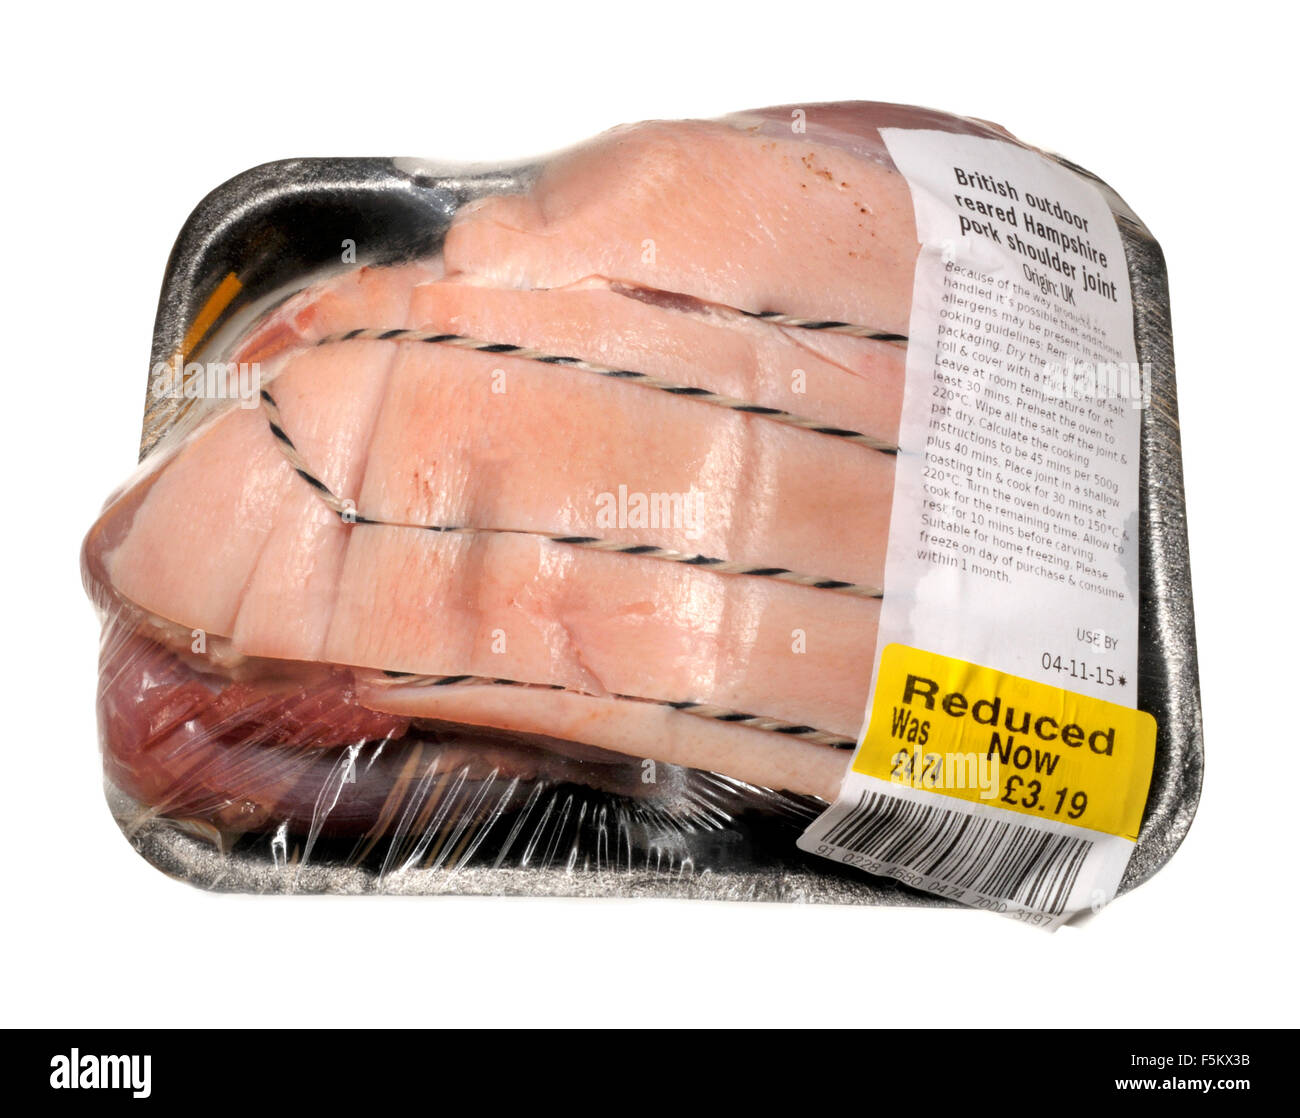 Articulation de l'épaule de porc à partir d'un supermarché Sainsburys (britannique) prix réduit sur sa date de péremption Banque D'Images